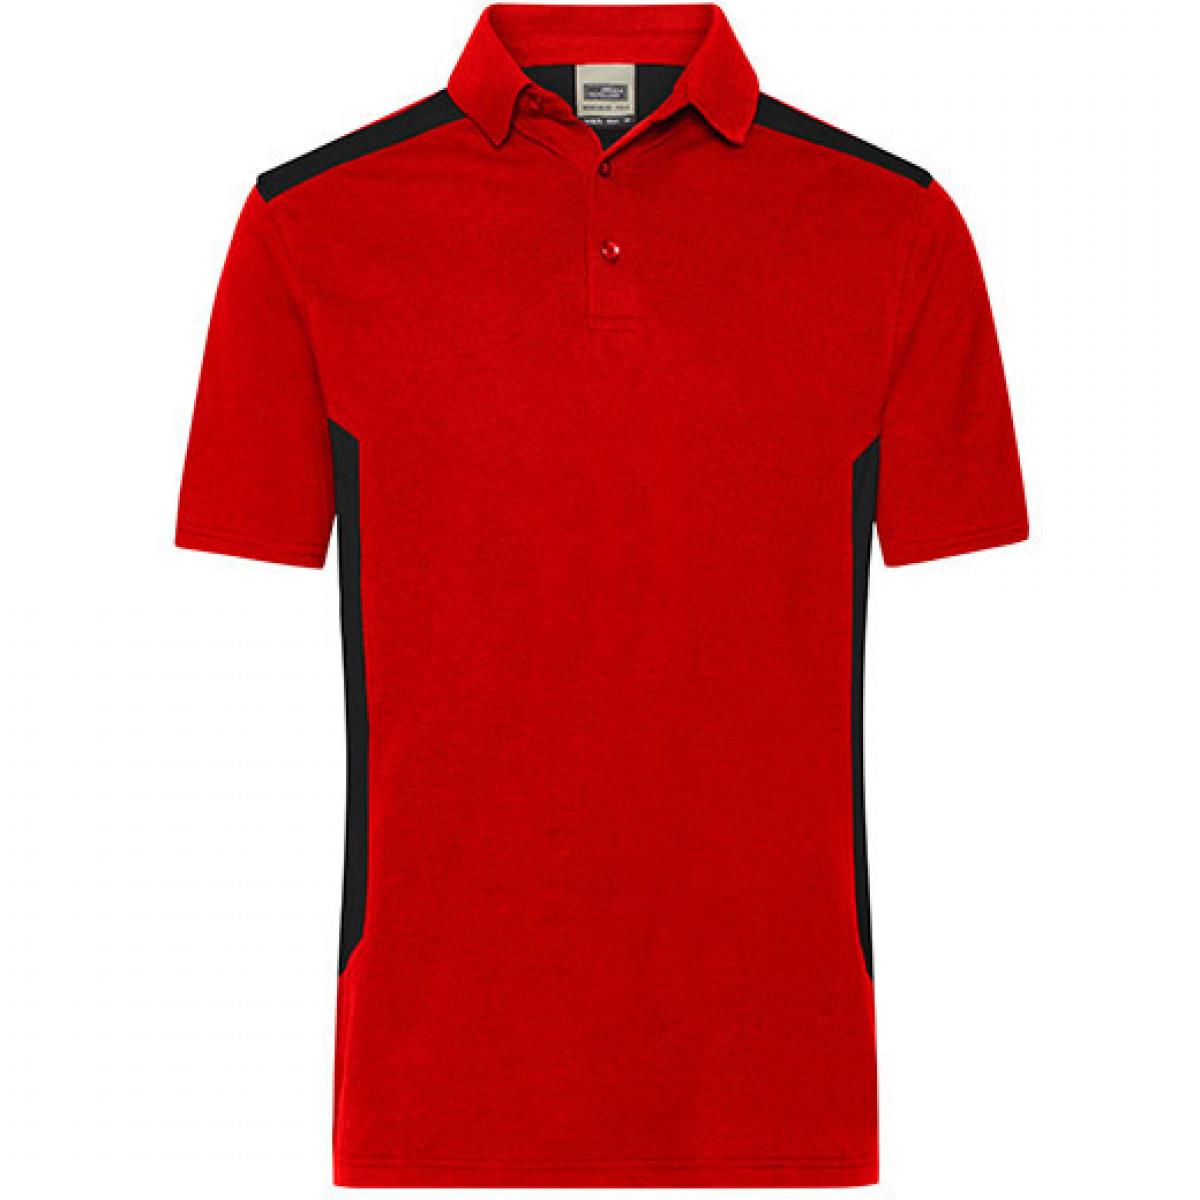 Hersteller: James+Nicholson Herstellernummer: JN1826 Artikelbezeichnung: Herren Polo, Men‘s Workwear Polo -STRONG-Waschbar bis 60 °C Farbe: Red/Black